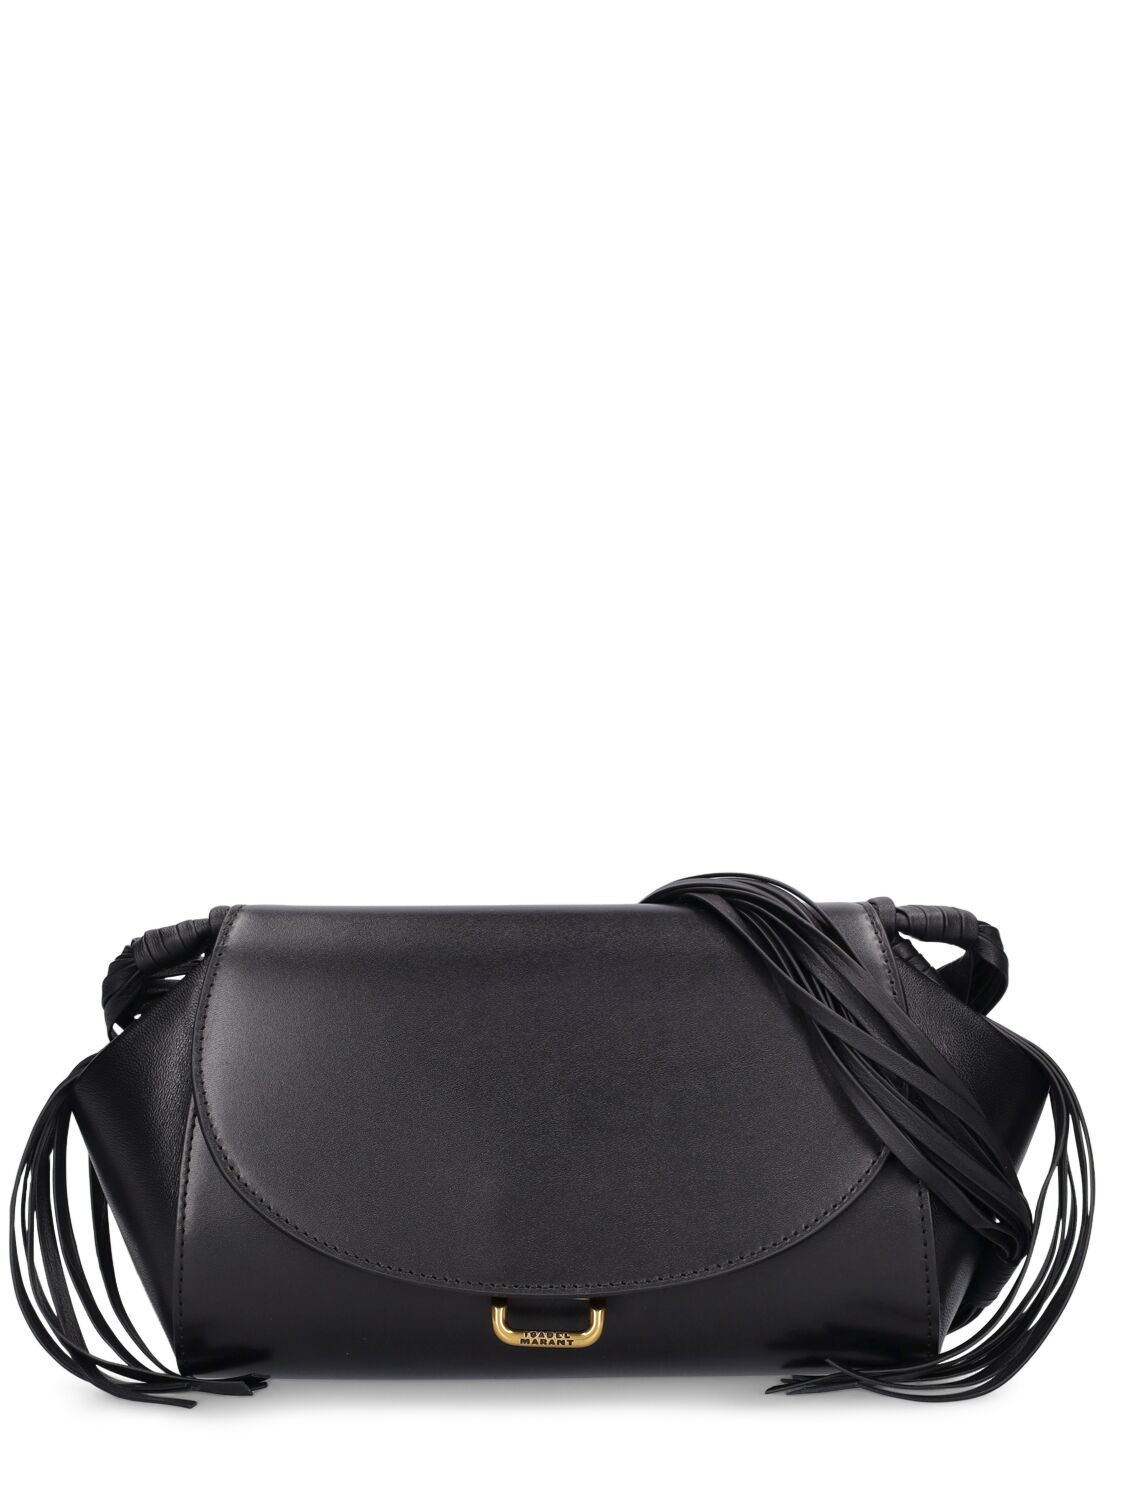 Isabel Marant Medium Murcia Leather Shoulder Bag In Black